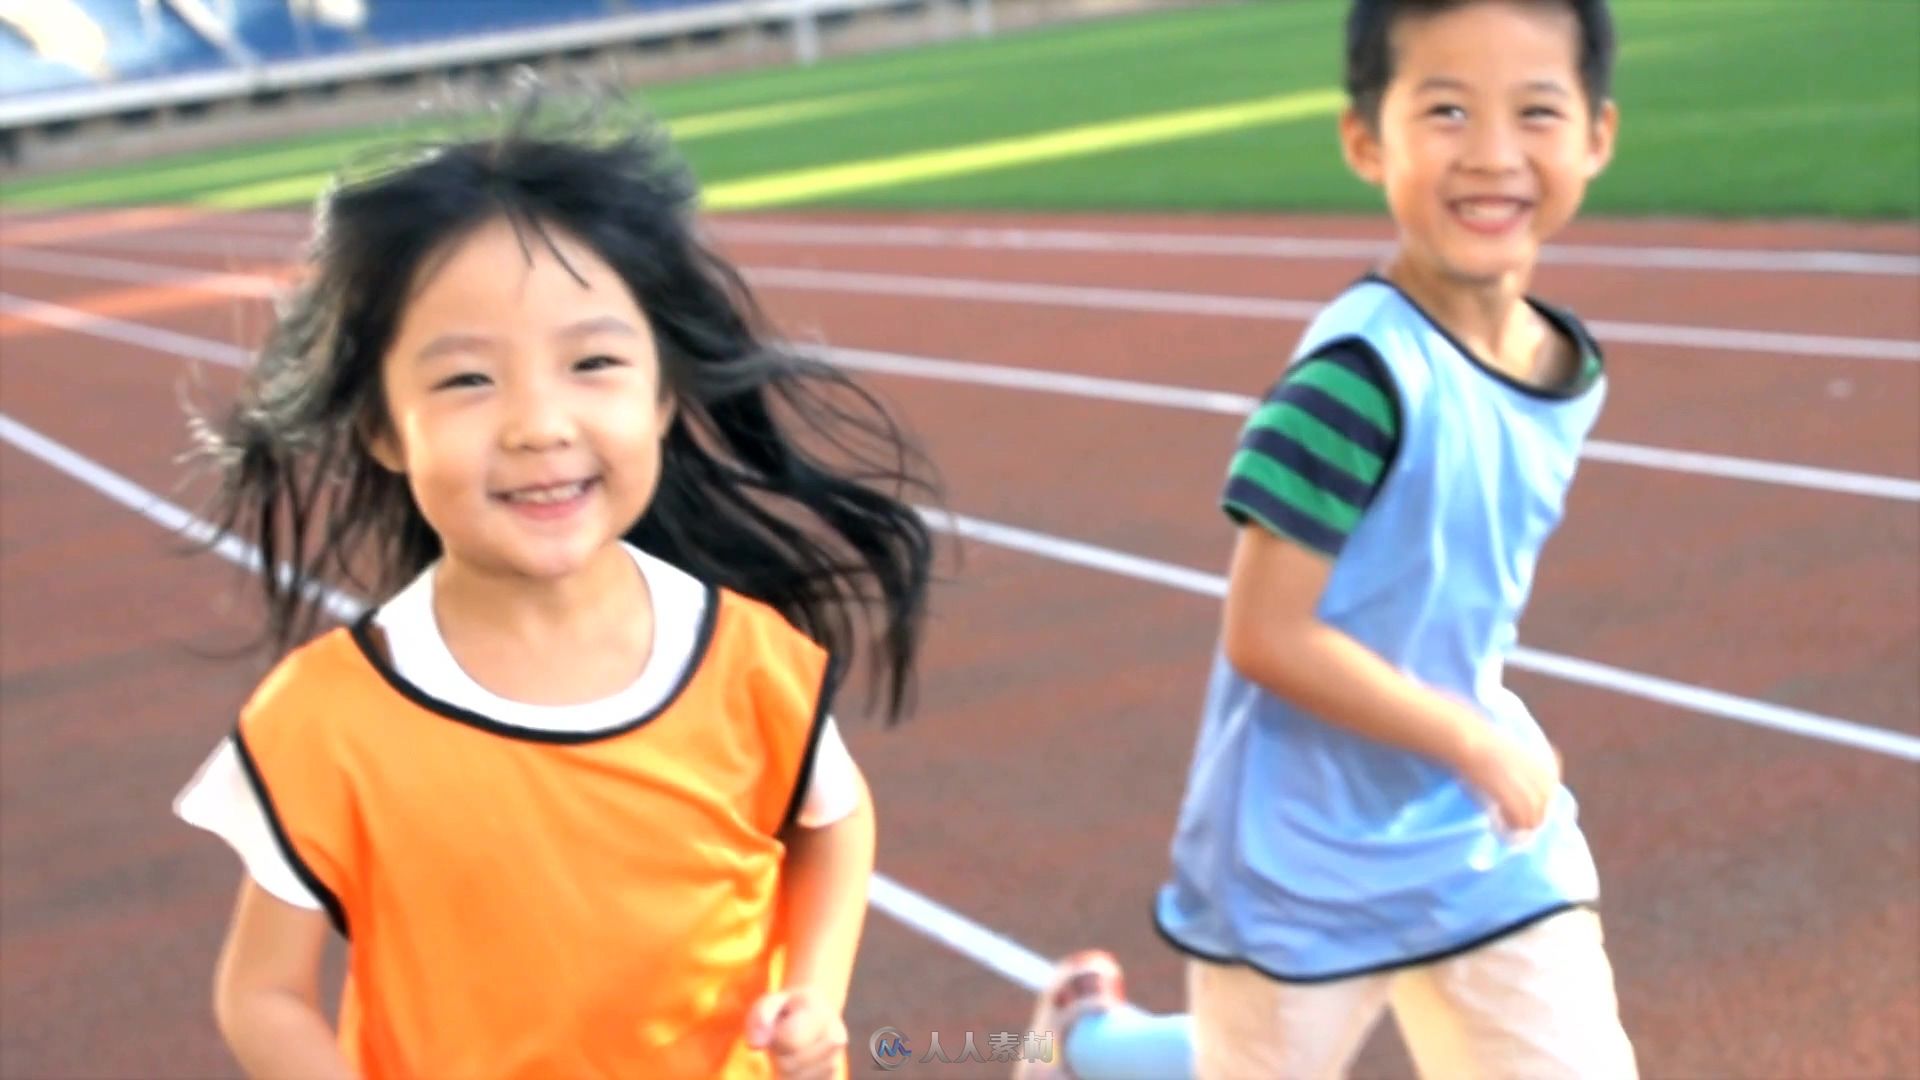 小朋友操场奔跑视频素材 - 视频素材 - 人人素材